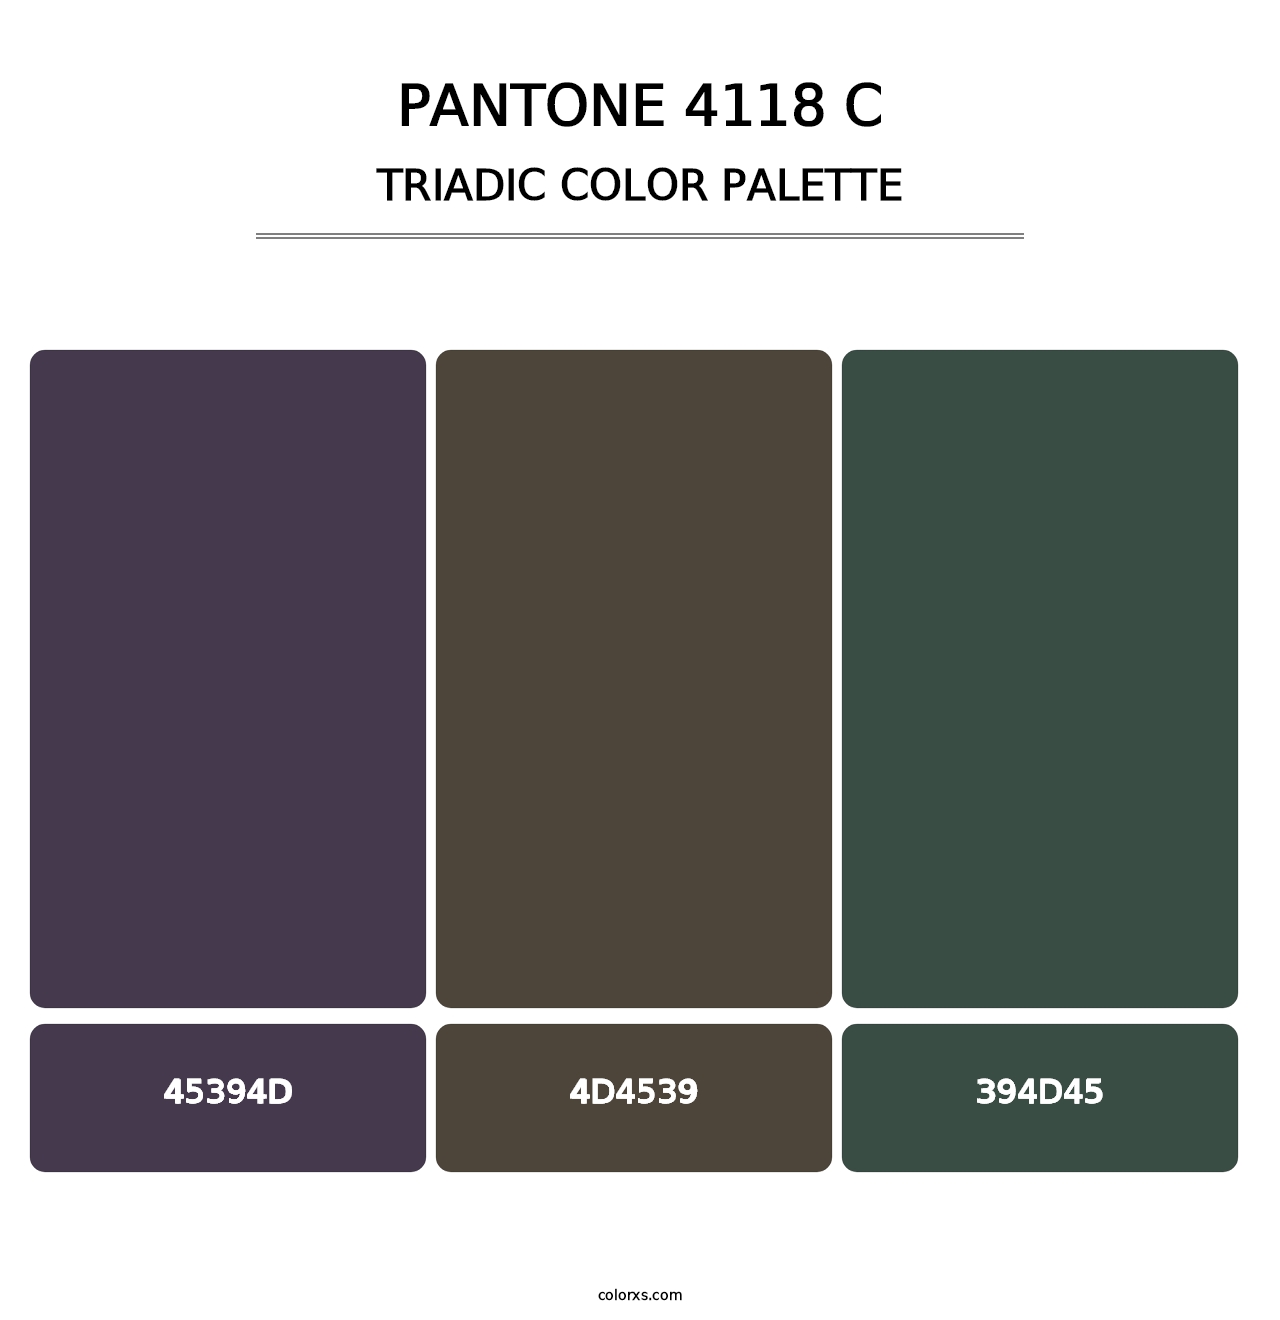 PANTONE 4118 C - Triadic Color Palette